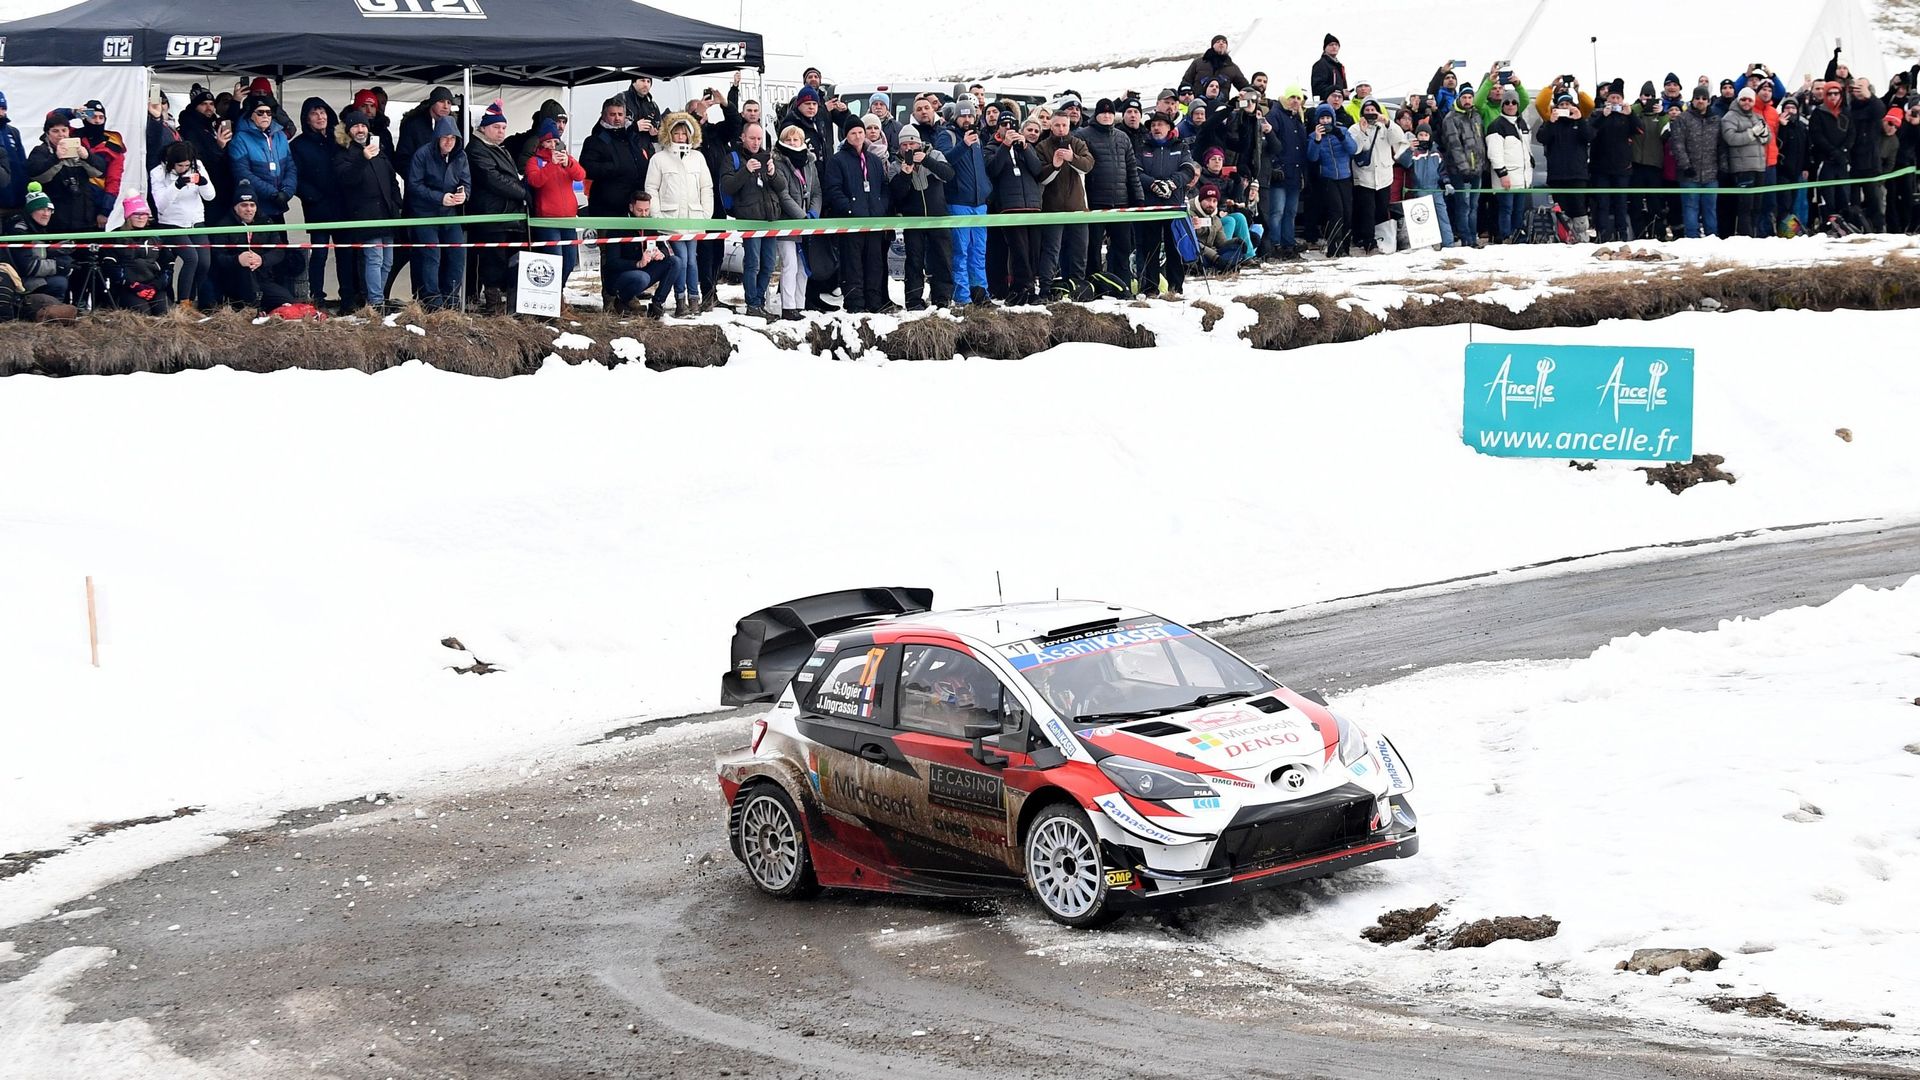 Rallye : 12 manches inscrites au championnat du monde WRC en 2021